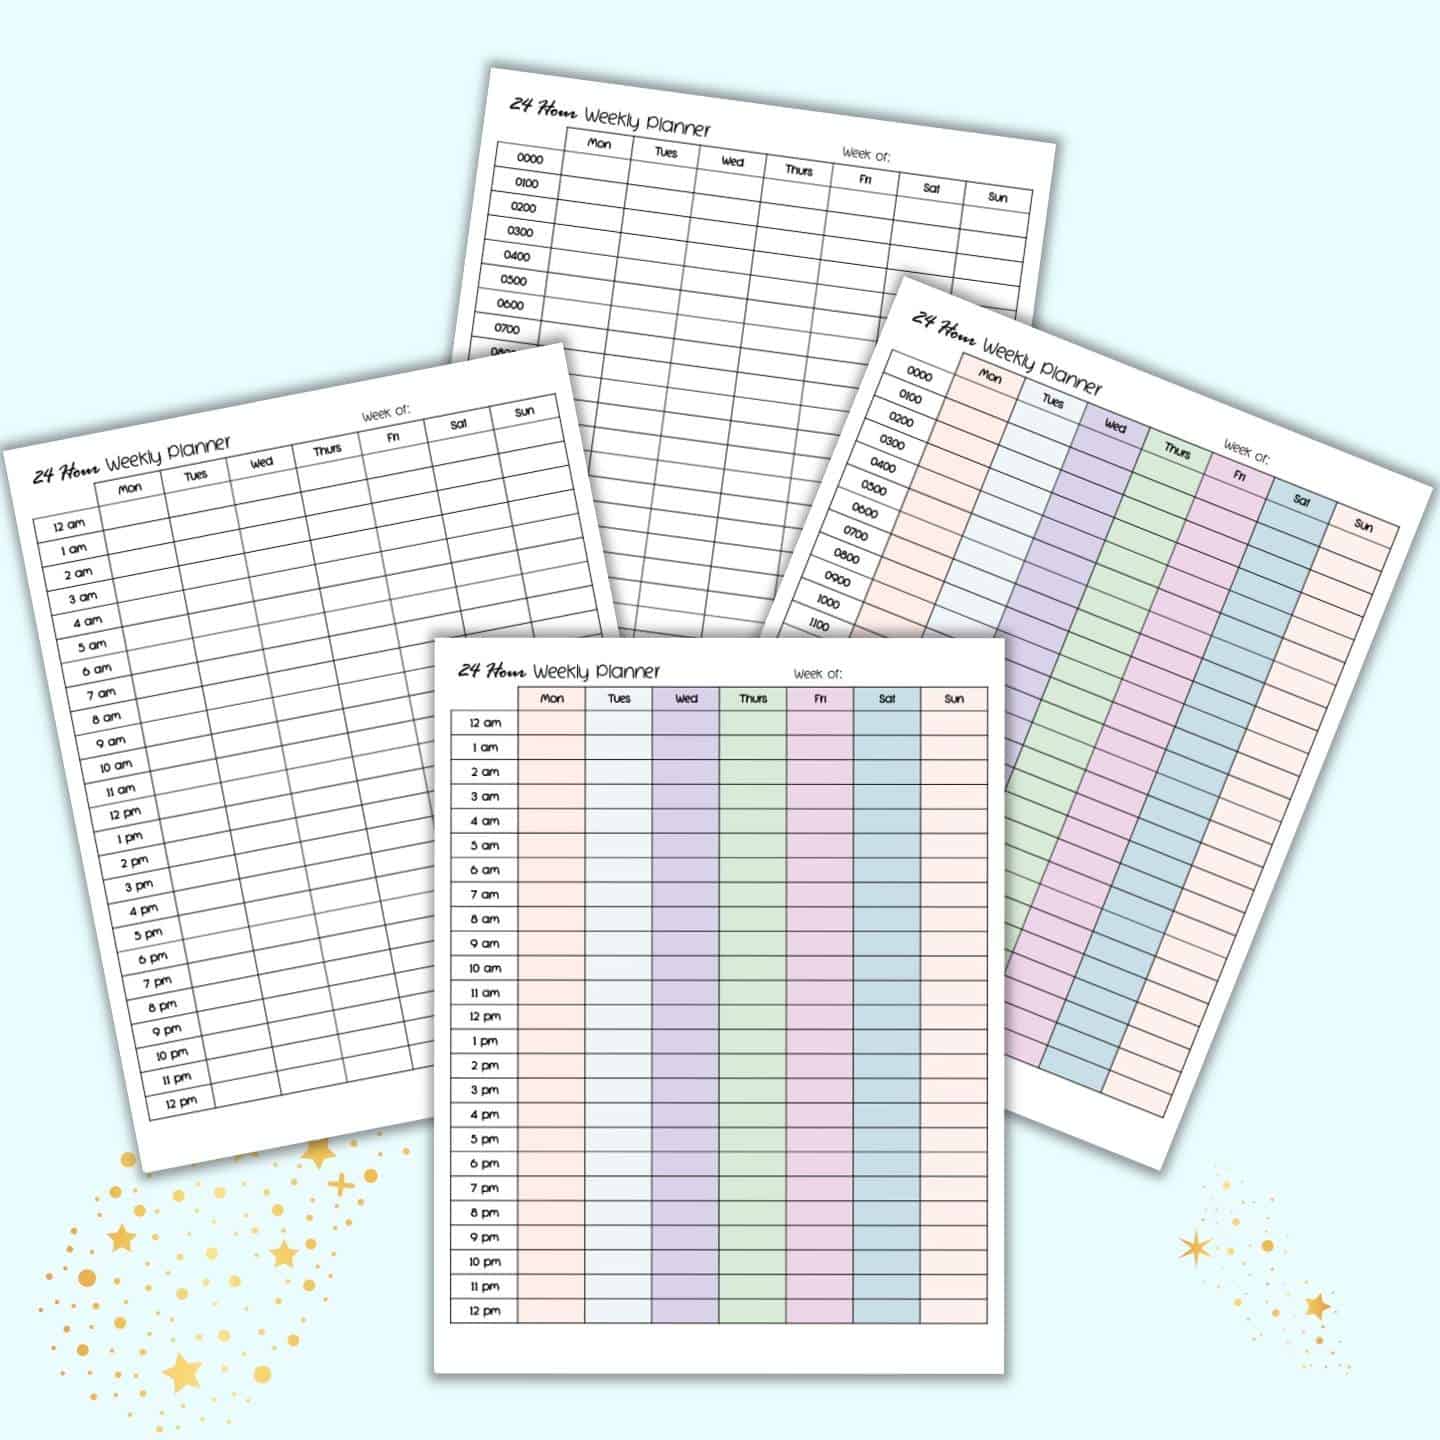  24 Hour Weekly Planner Printable free Printable 24 Hour Calendar 